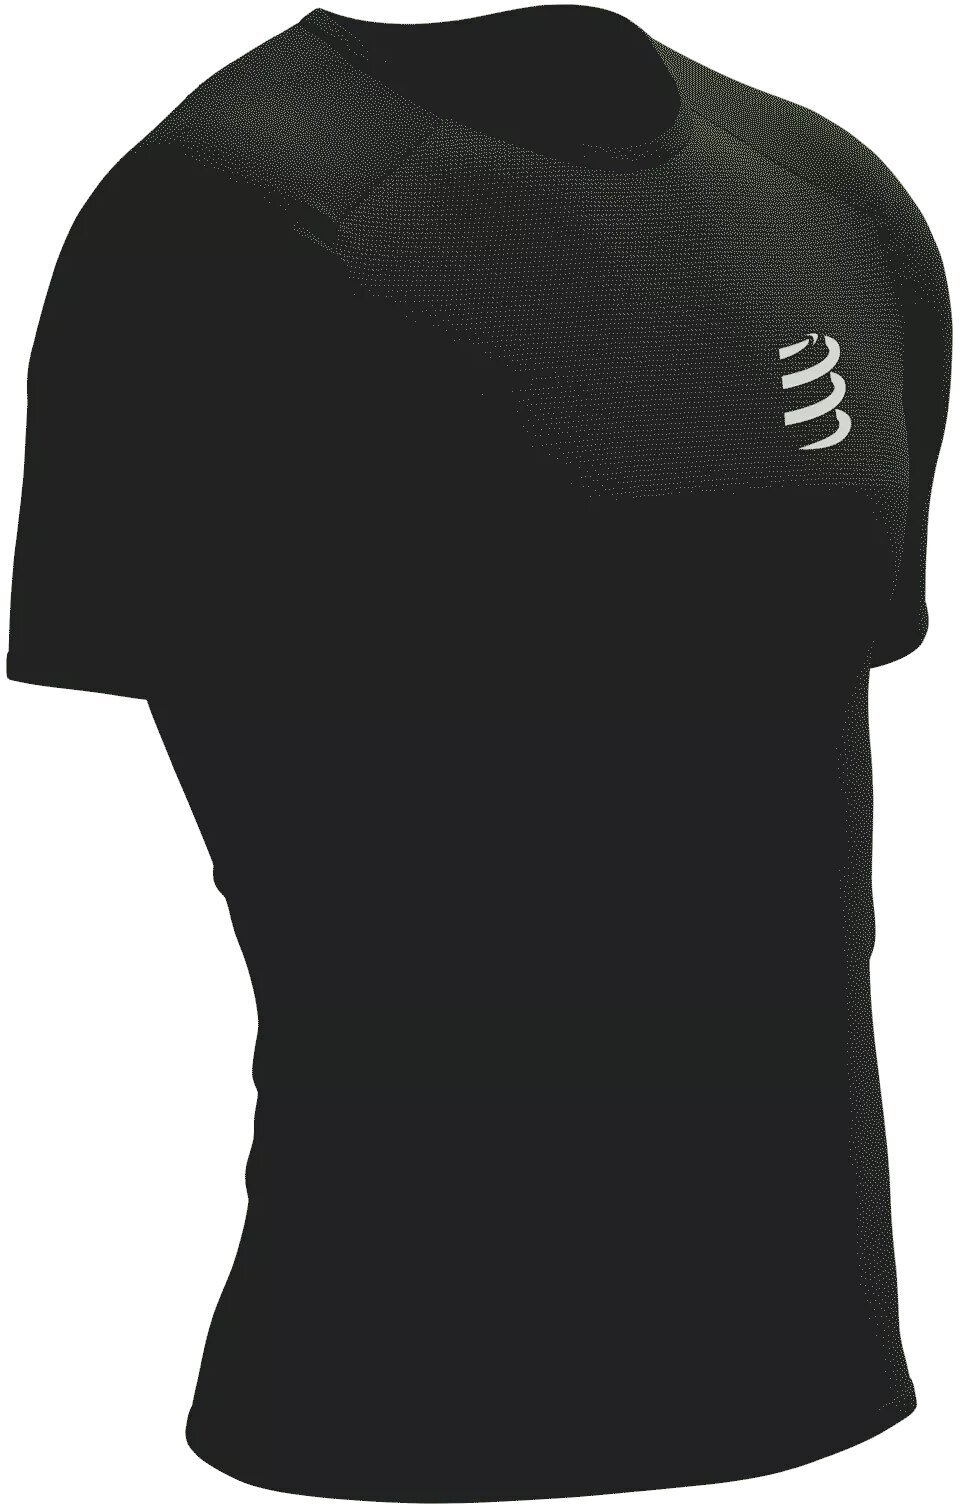 Compressport Performance SS Tshirt M Black/White XL Bežecké tričko s krátkym rukávom